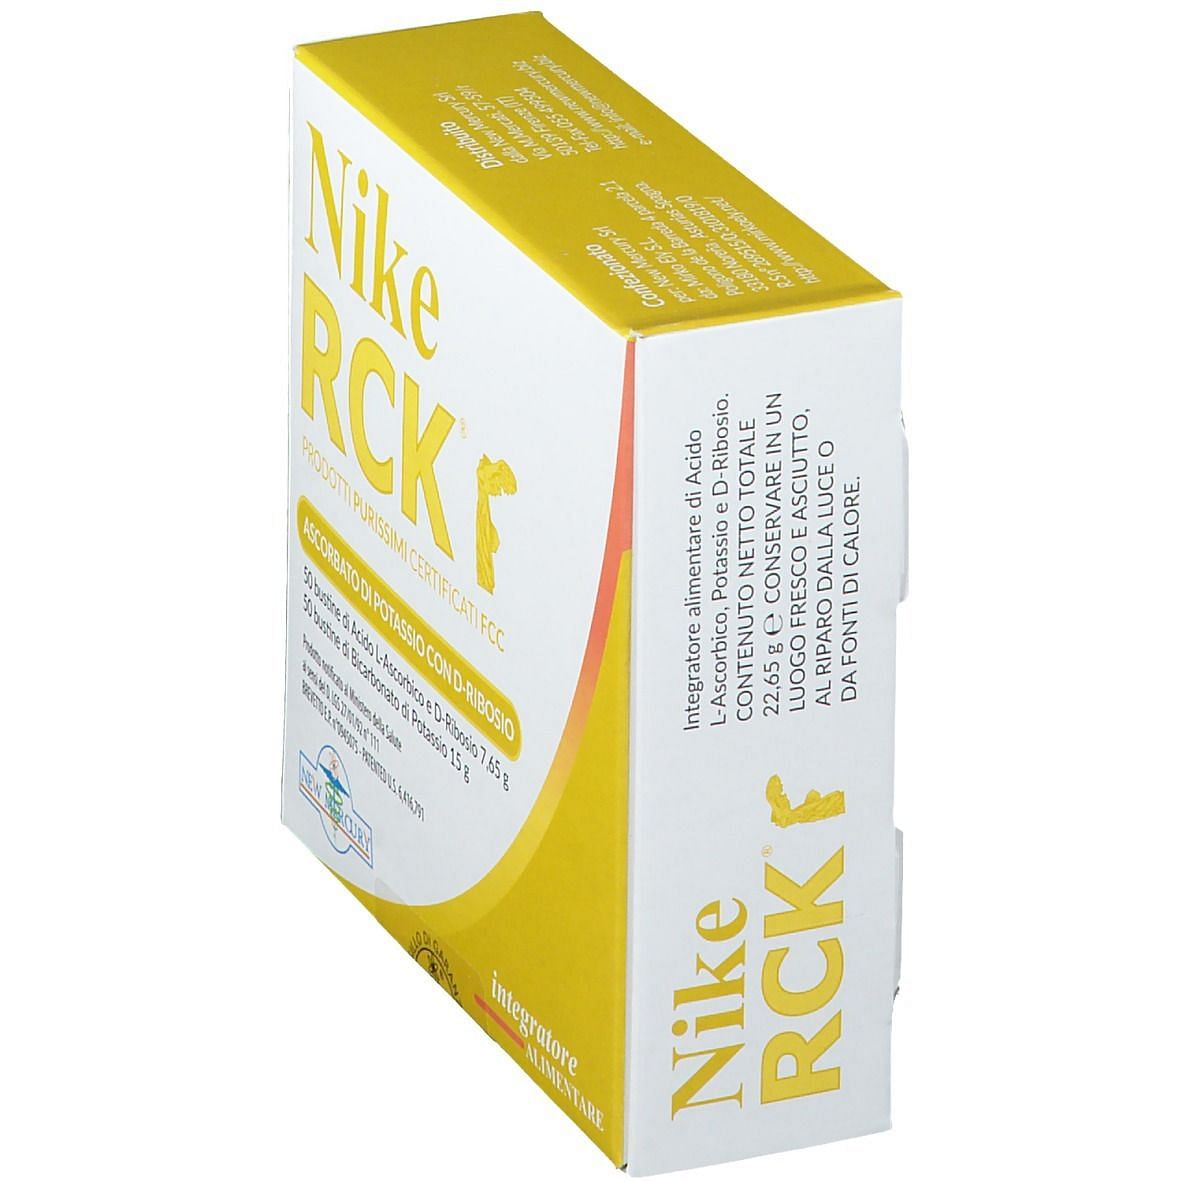 NIKE RCK Ascorbato di Potassio con D-Ribosio - Antiossidante